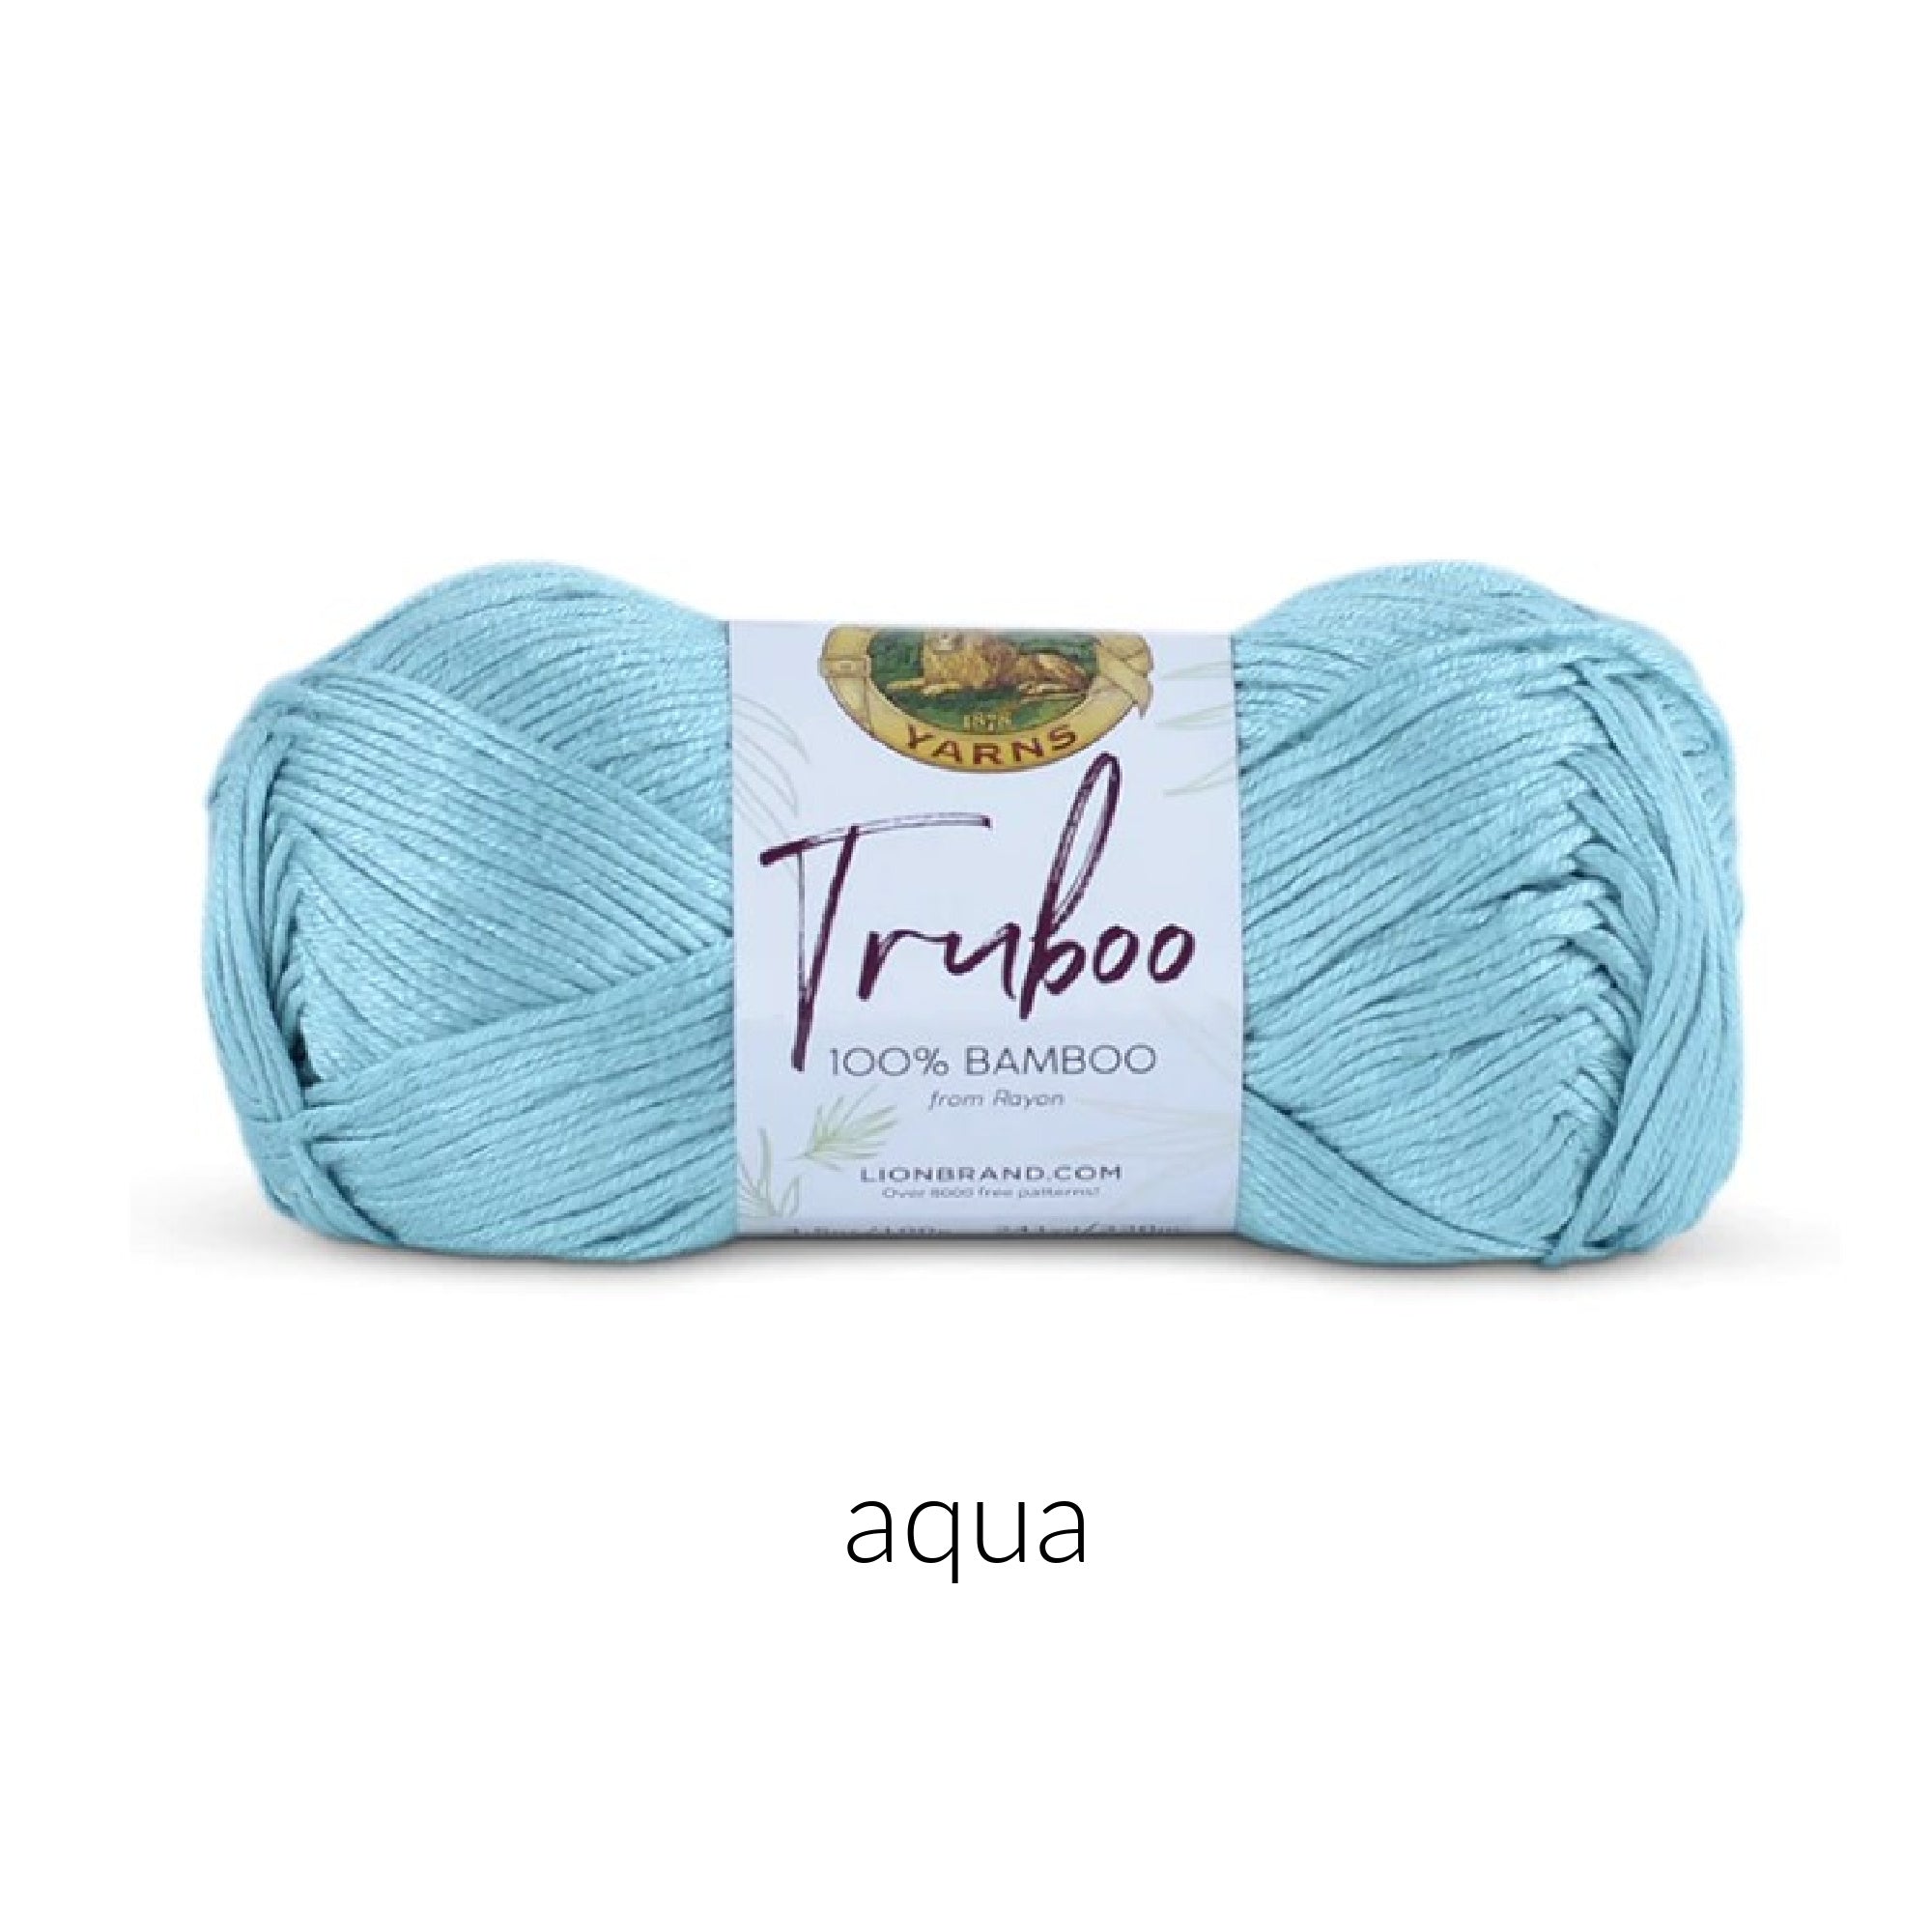 Lion Brand Yarn Truboo Yarn FurlsCrochet Aqua 